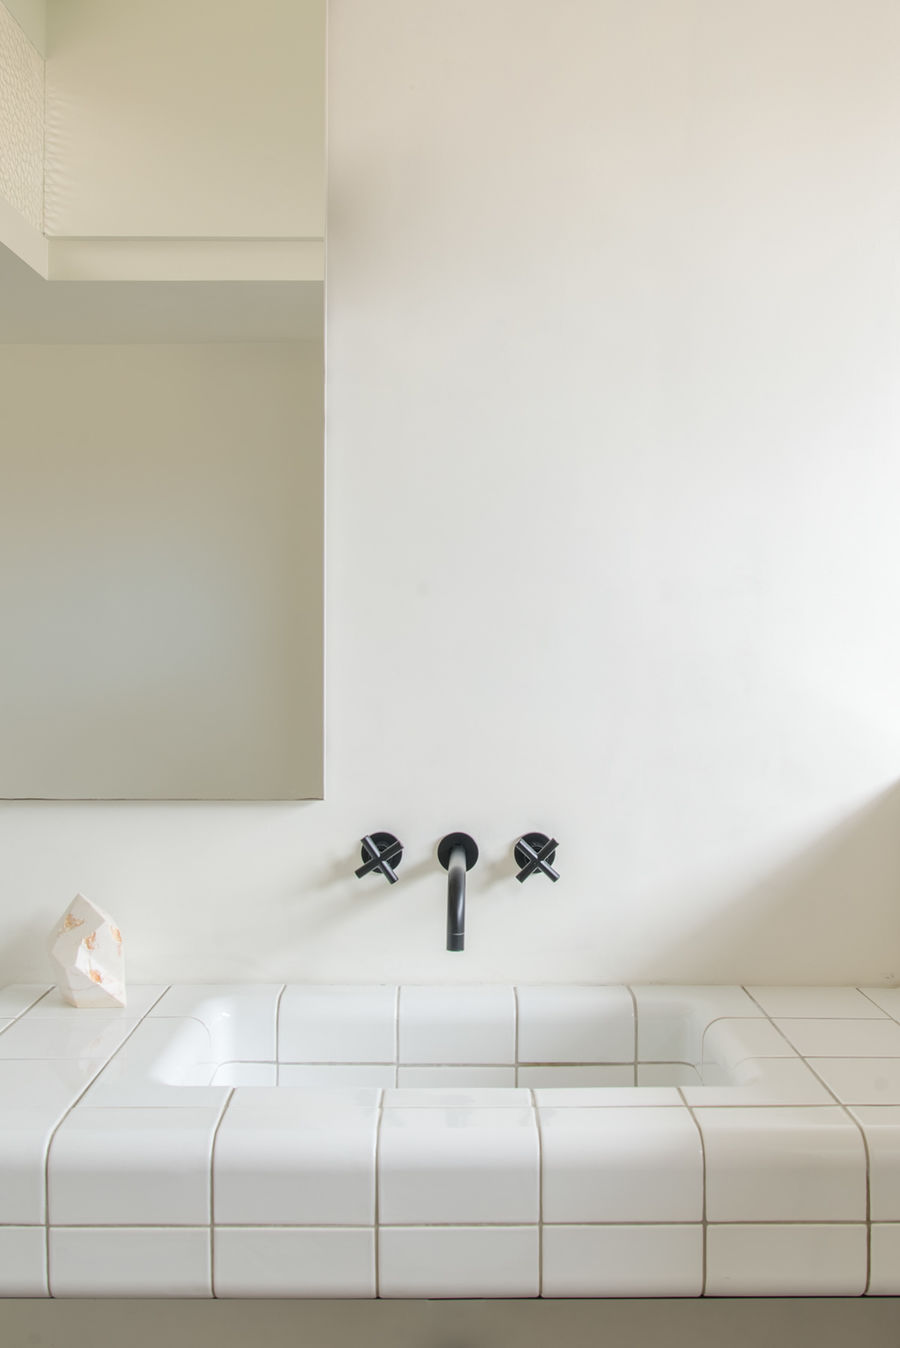 【国外作品】浴室装修设计表现